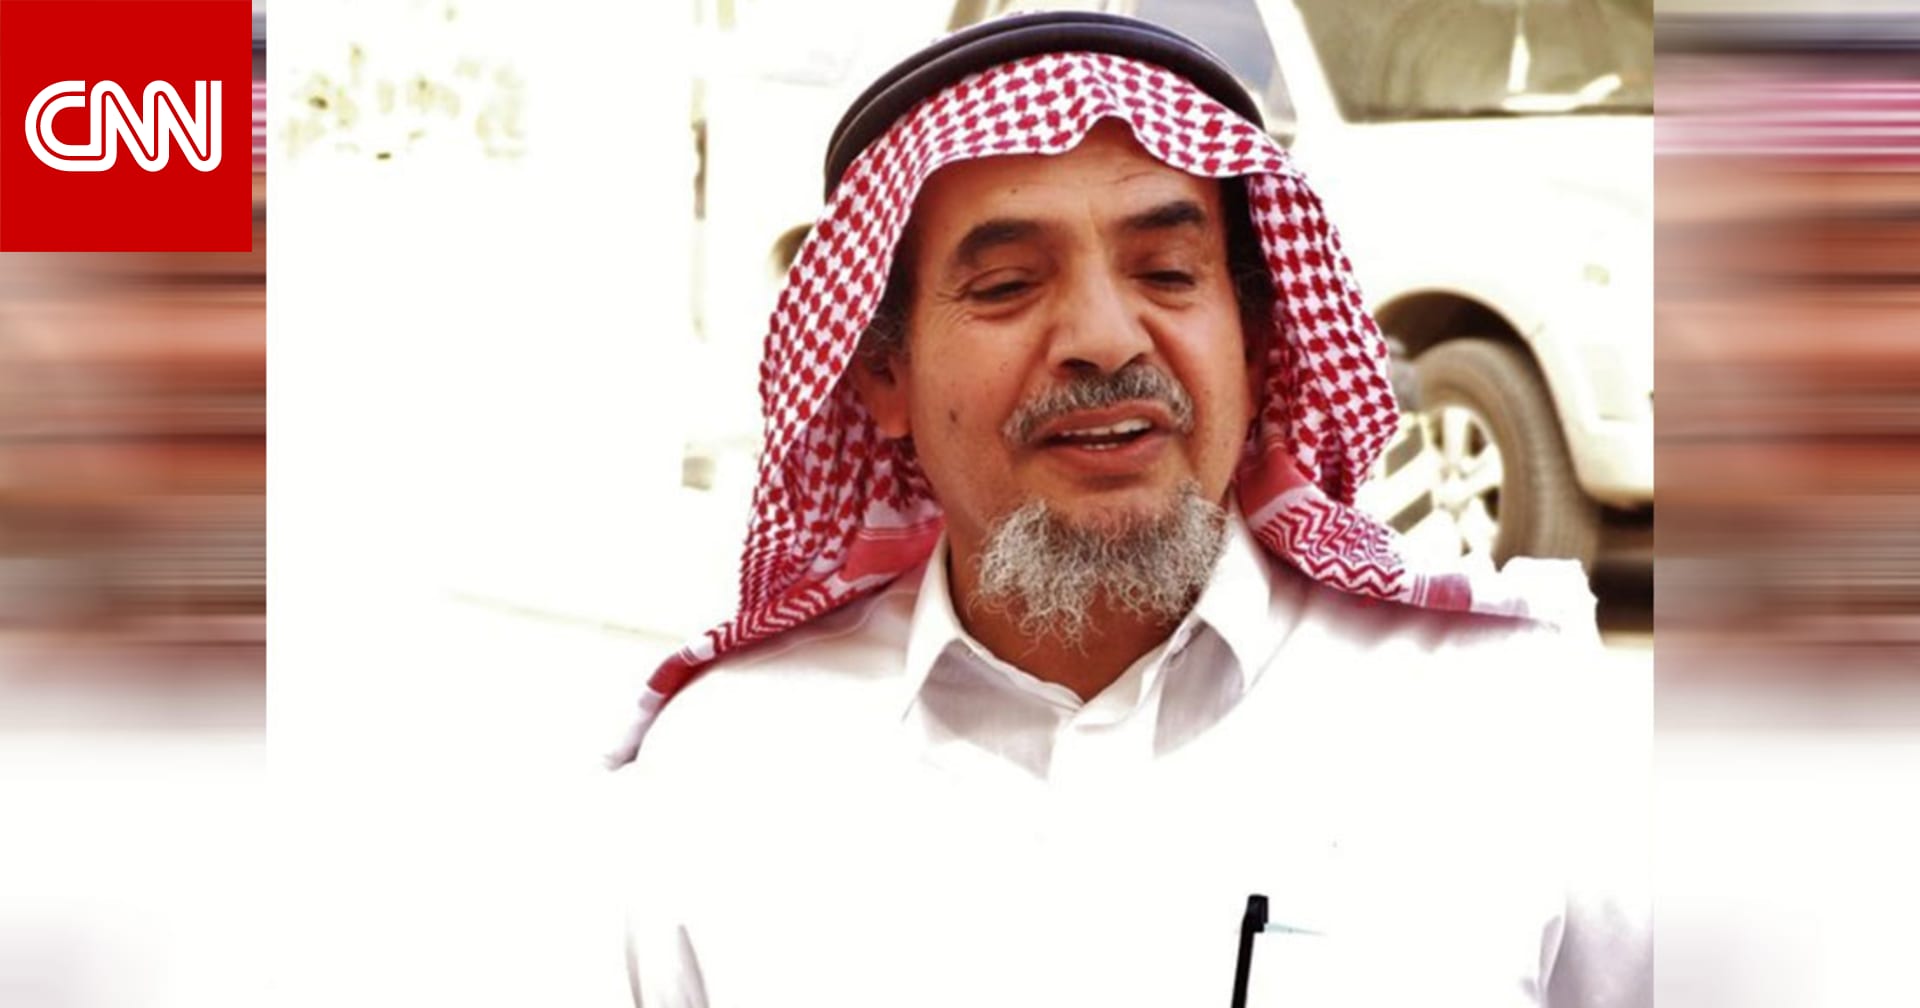 كالامارد تغرد عن  وفاة سجين الرأي عبدالله الحامد في السعودية .. كيف رد عادل الجبير على تقاريرها سابقا؟ - CNN Arabic